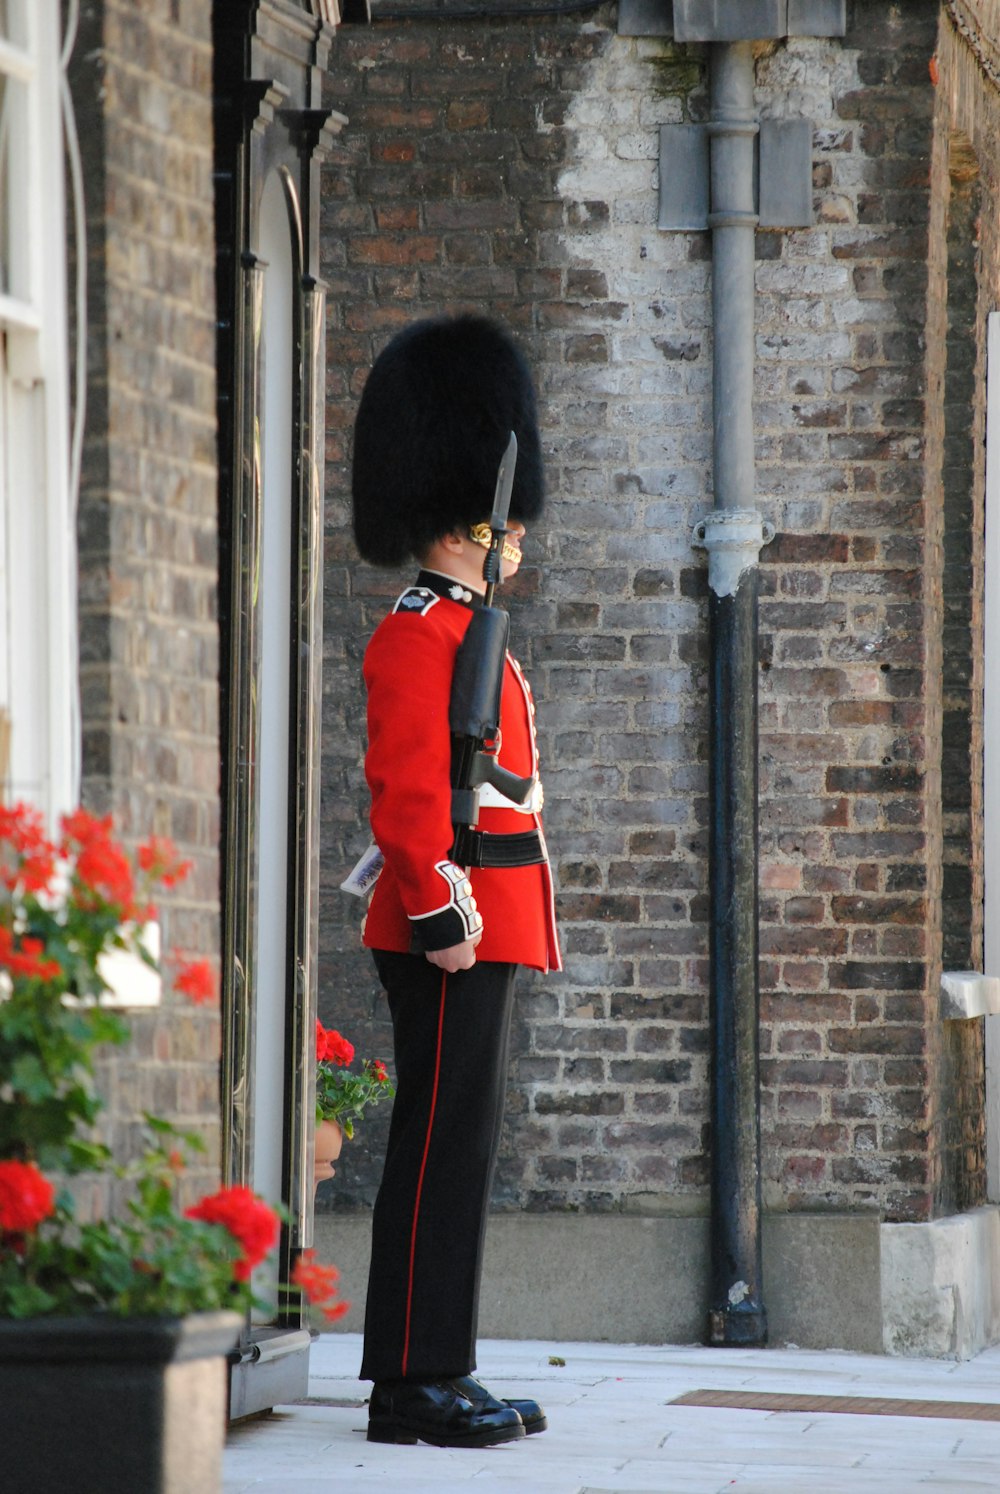 昼間、黒い金属製の支柱のそばに立つ赤と黒の制服を着た人物